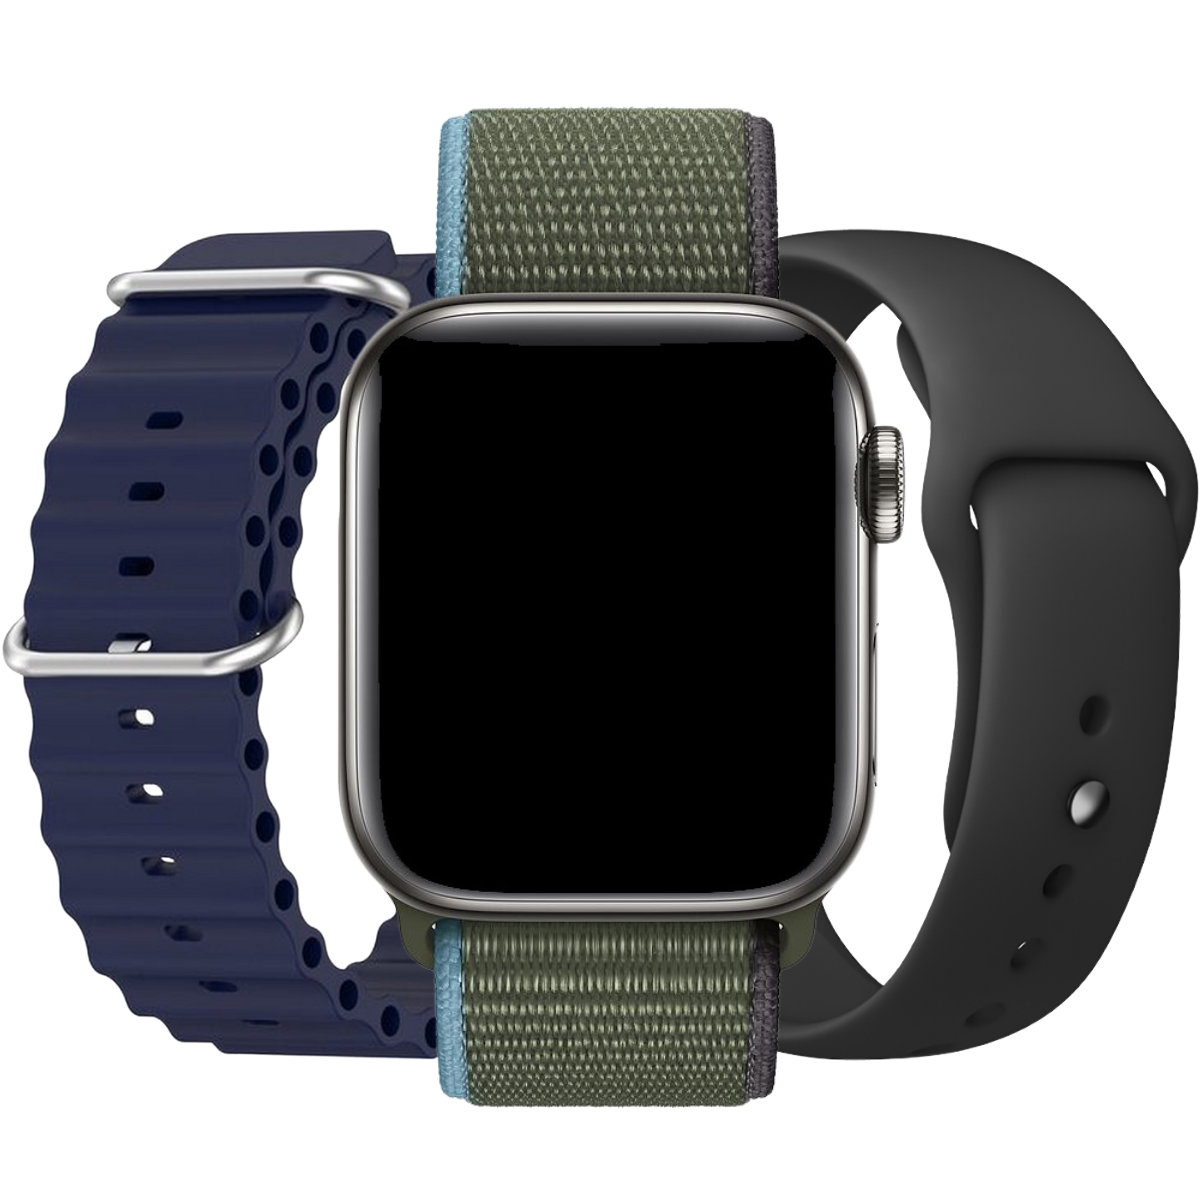 Gentlemen Apple Watch bundle deal - 3x